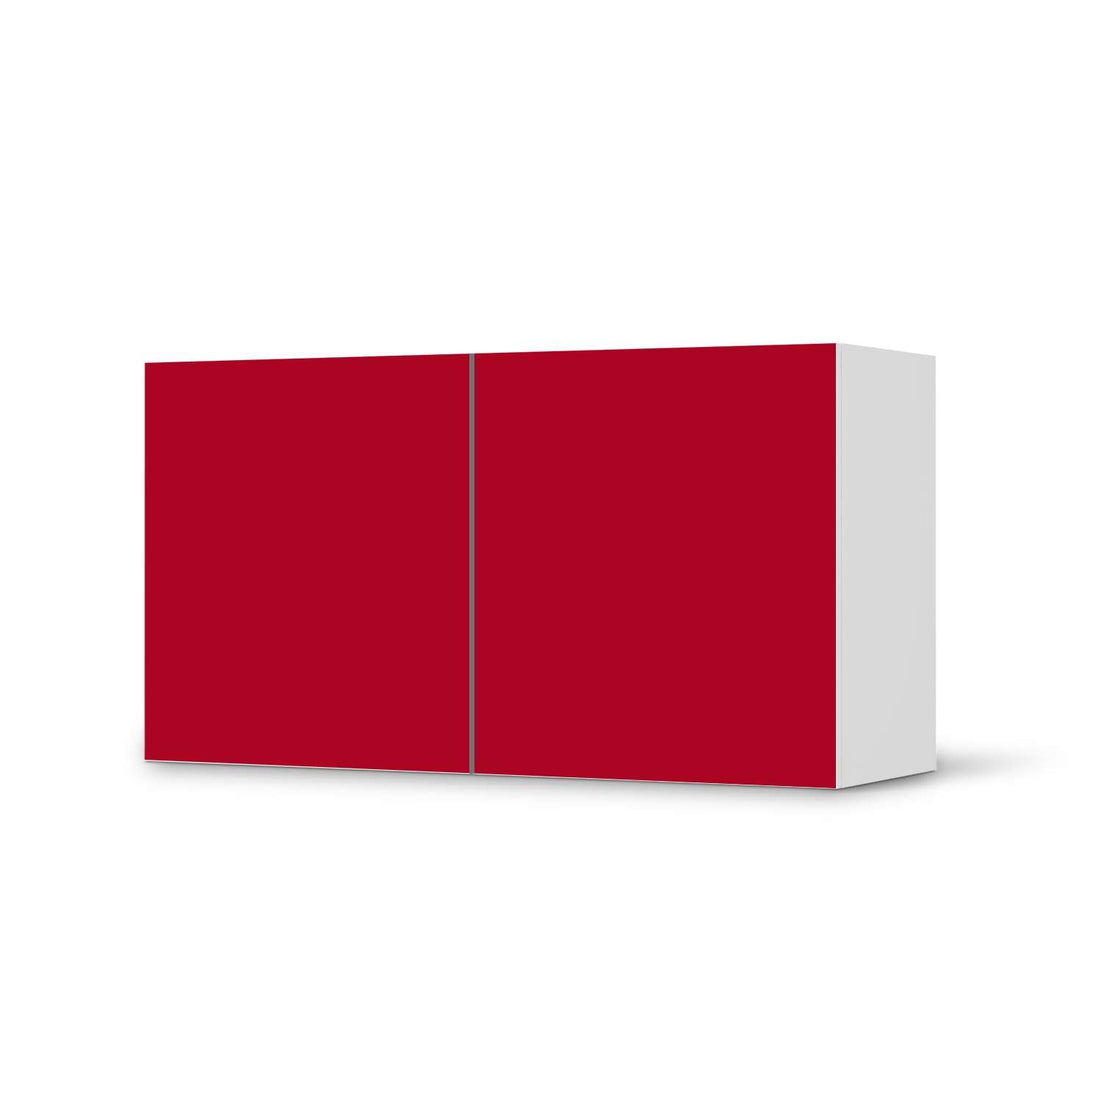 Folie für Möbel Rot Dark - IKEA Besta Regal Quer 2 Türen  - weiss